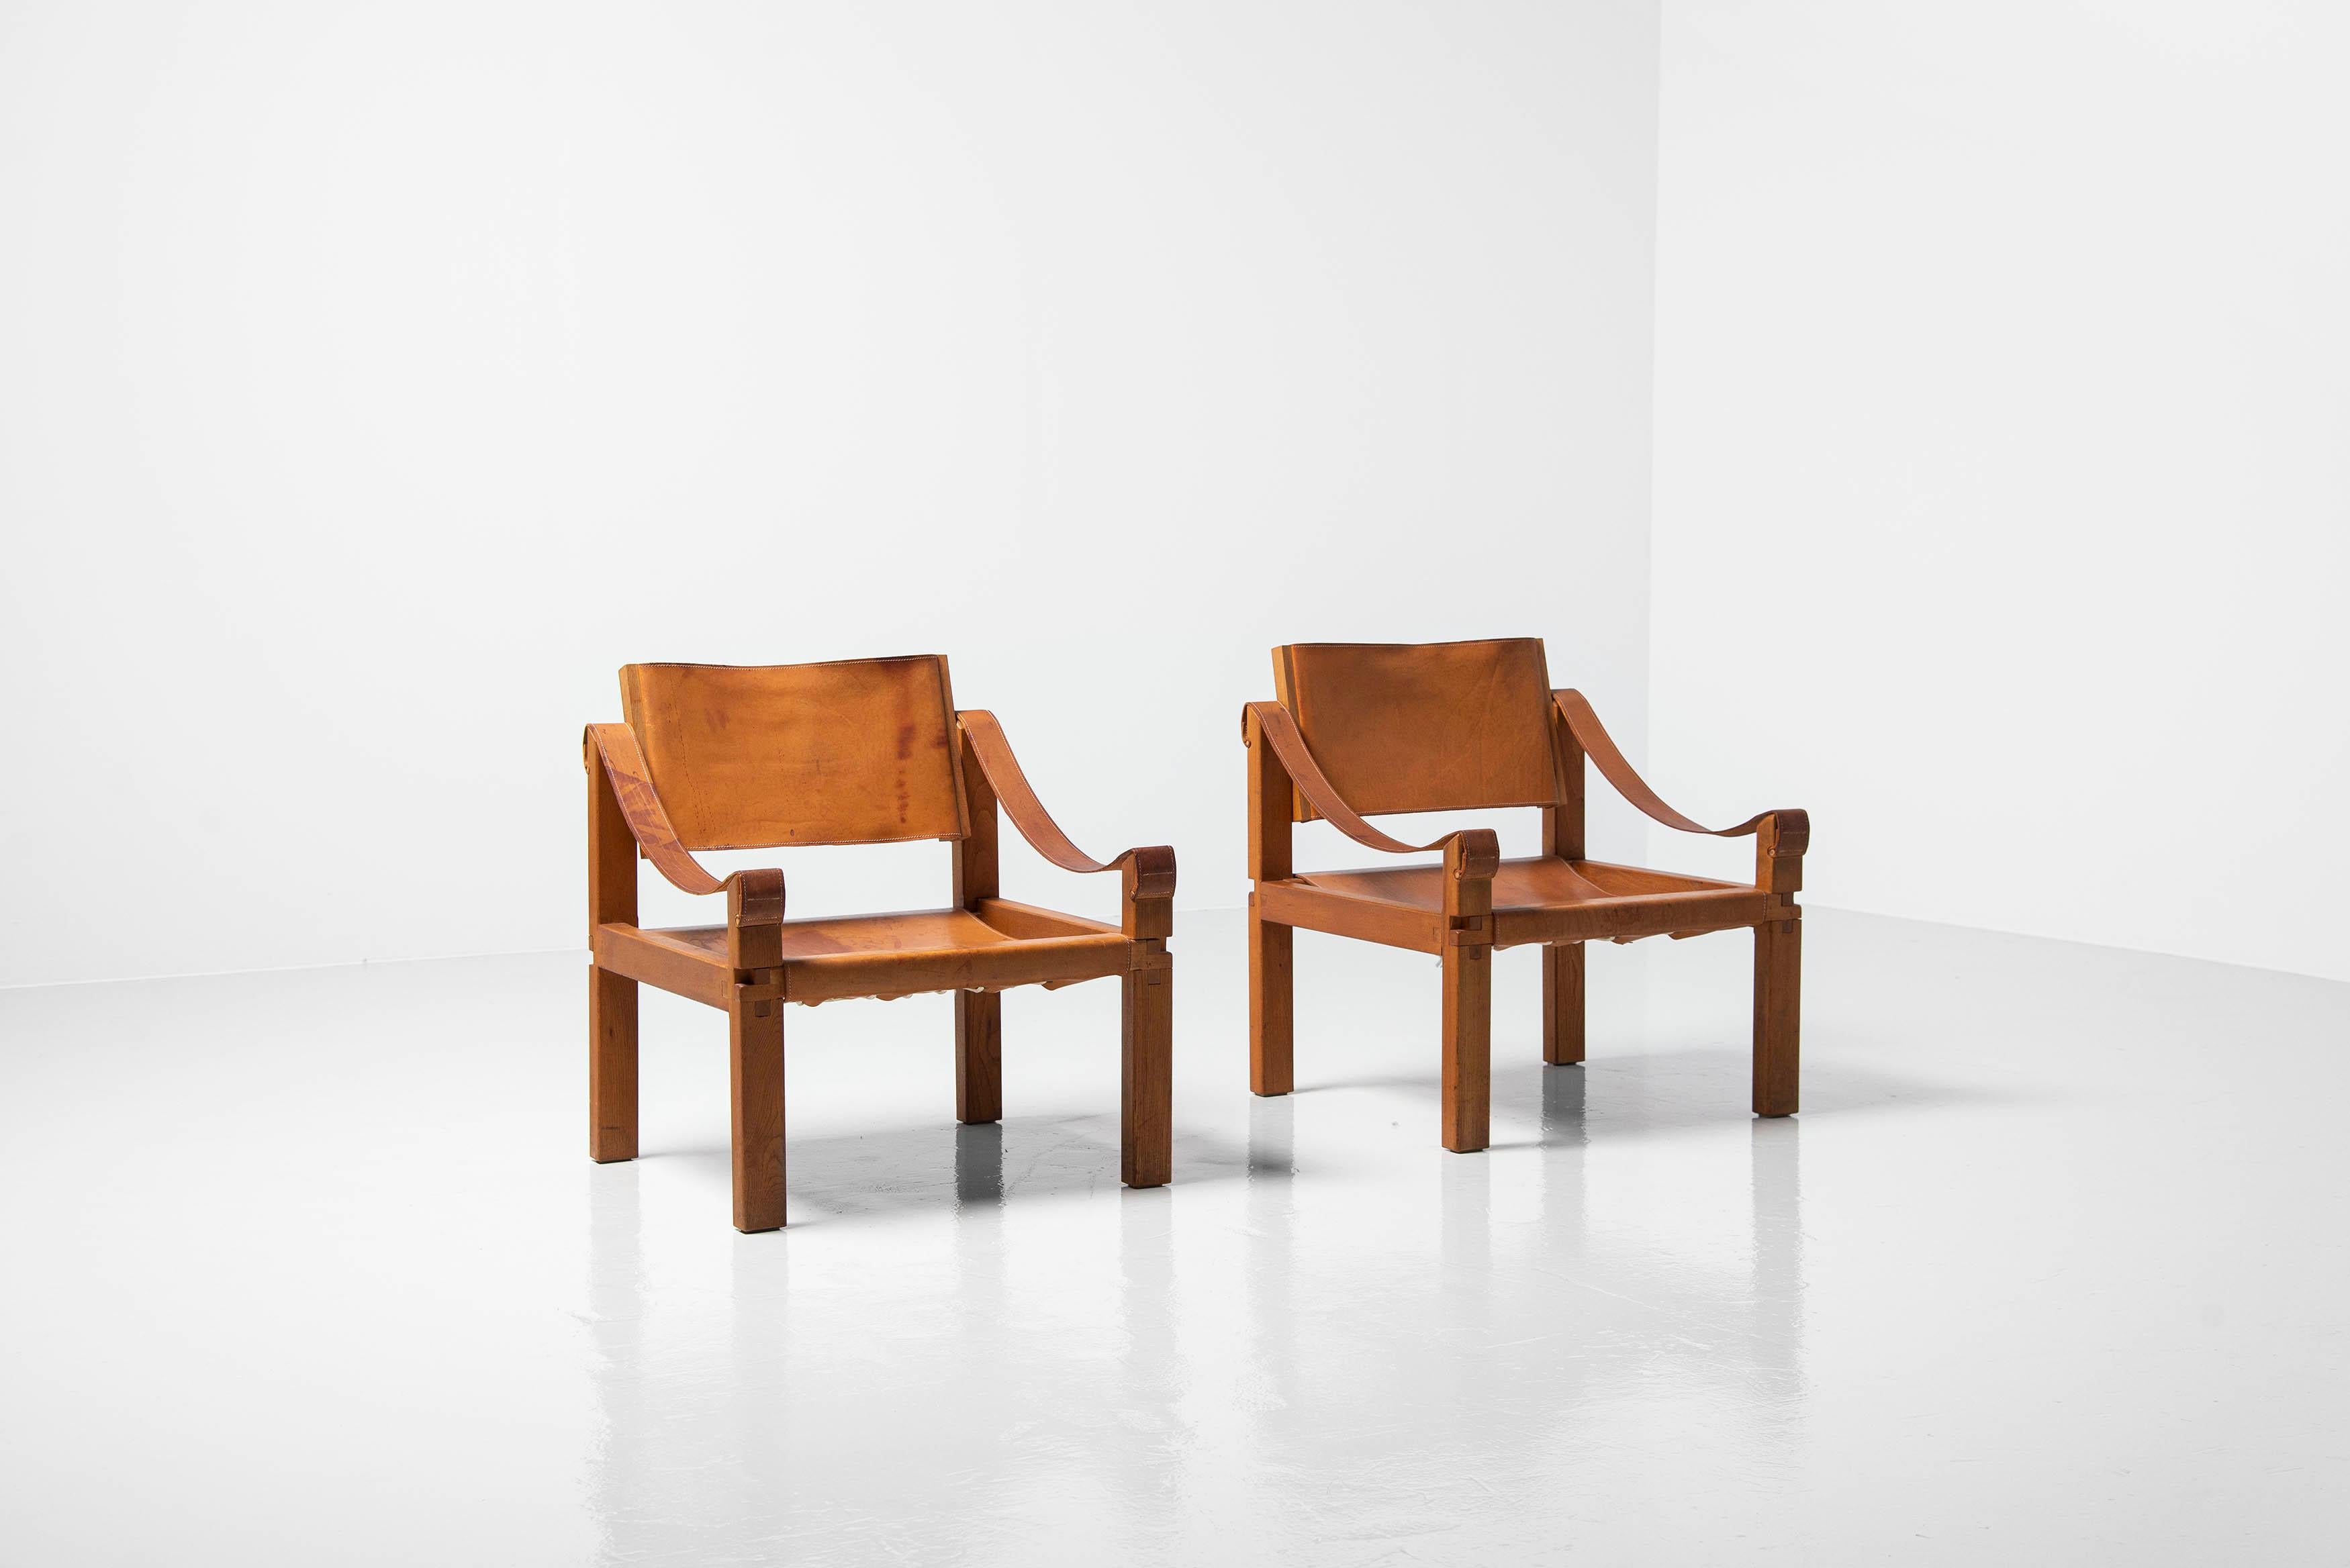 Superbe paire de chaises longues S10 conçue par Pierre Chapo et fabriquée dans son propre atelier en France, 1964. Ces chaises sont dotées d'un cadre en bois d'orme massif dont la structure détaillée et exquise est affinée par les assemblages à